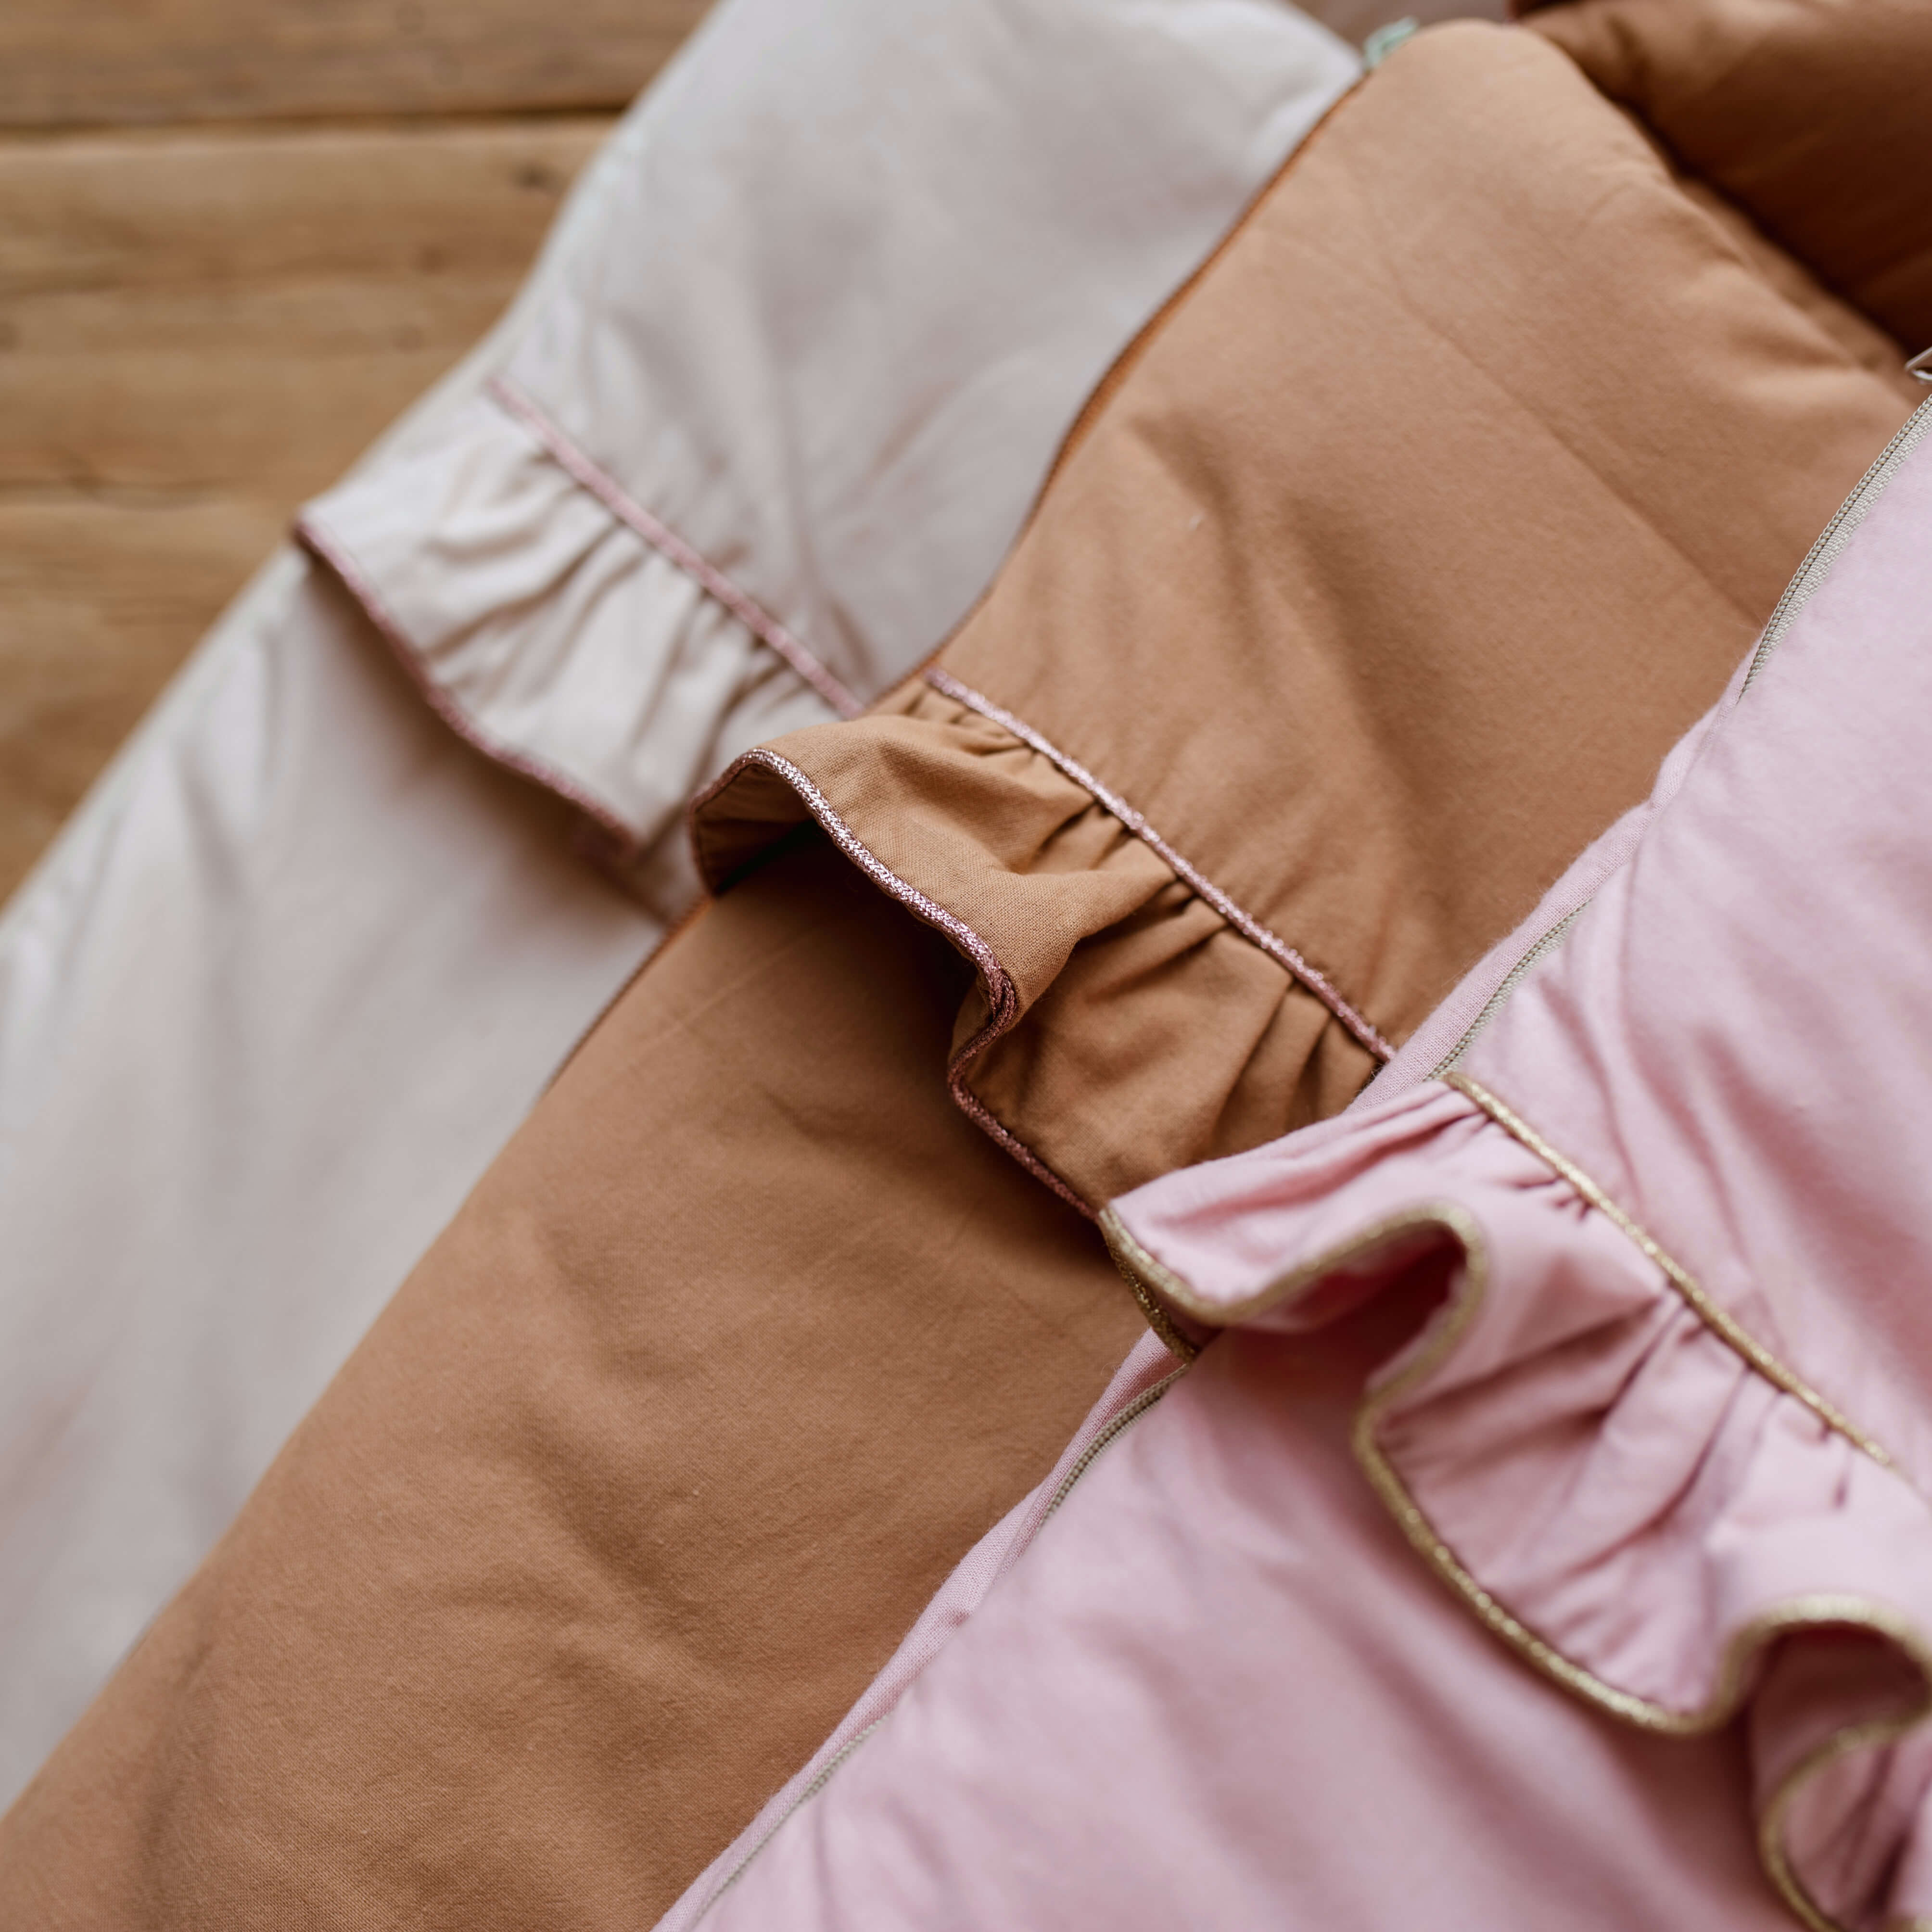 Premium Babyschlafsack Shiny mit Rüschen & einem glitzernden Rand | Farbe Natural & rosa Rand | 30x53 cm (Frühchen) | TOG 2.5